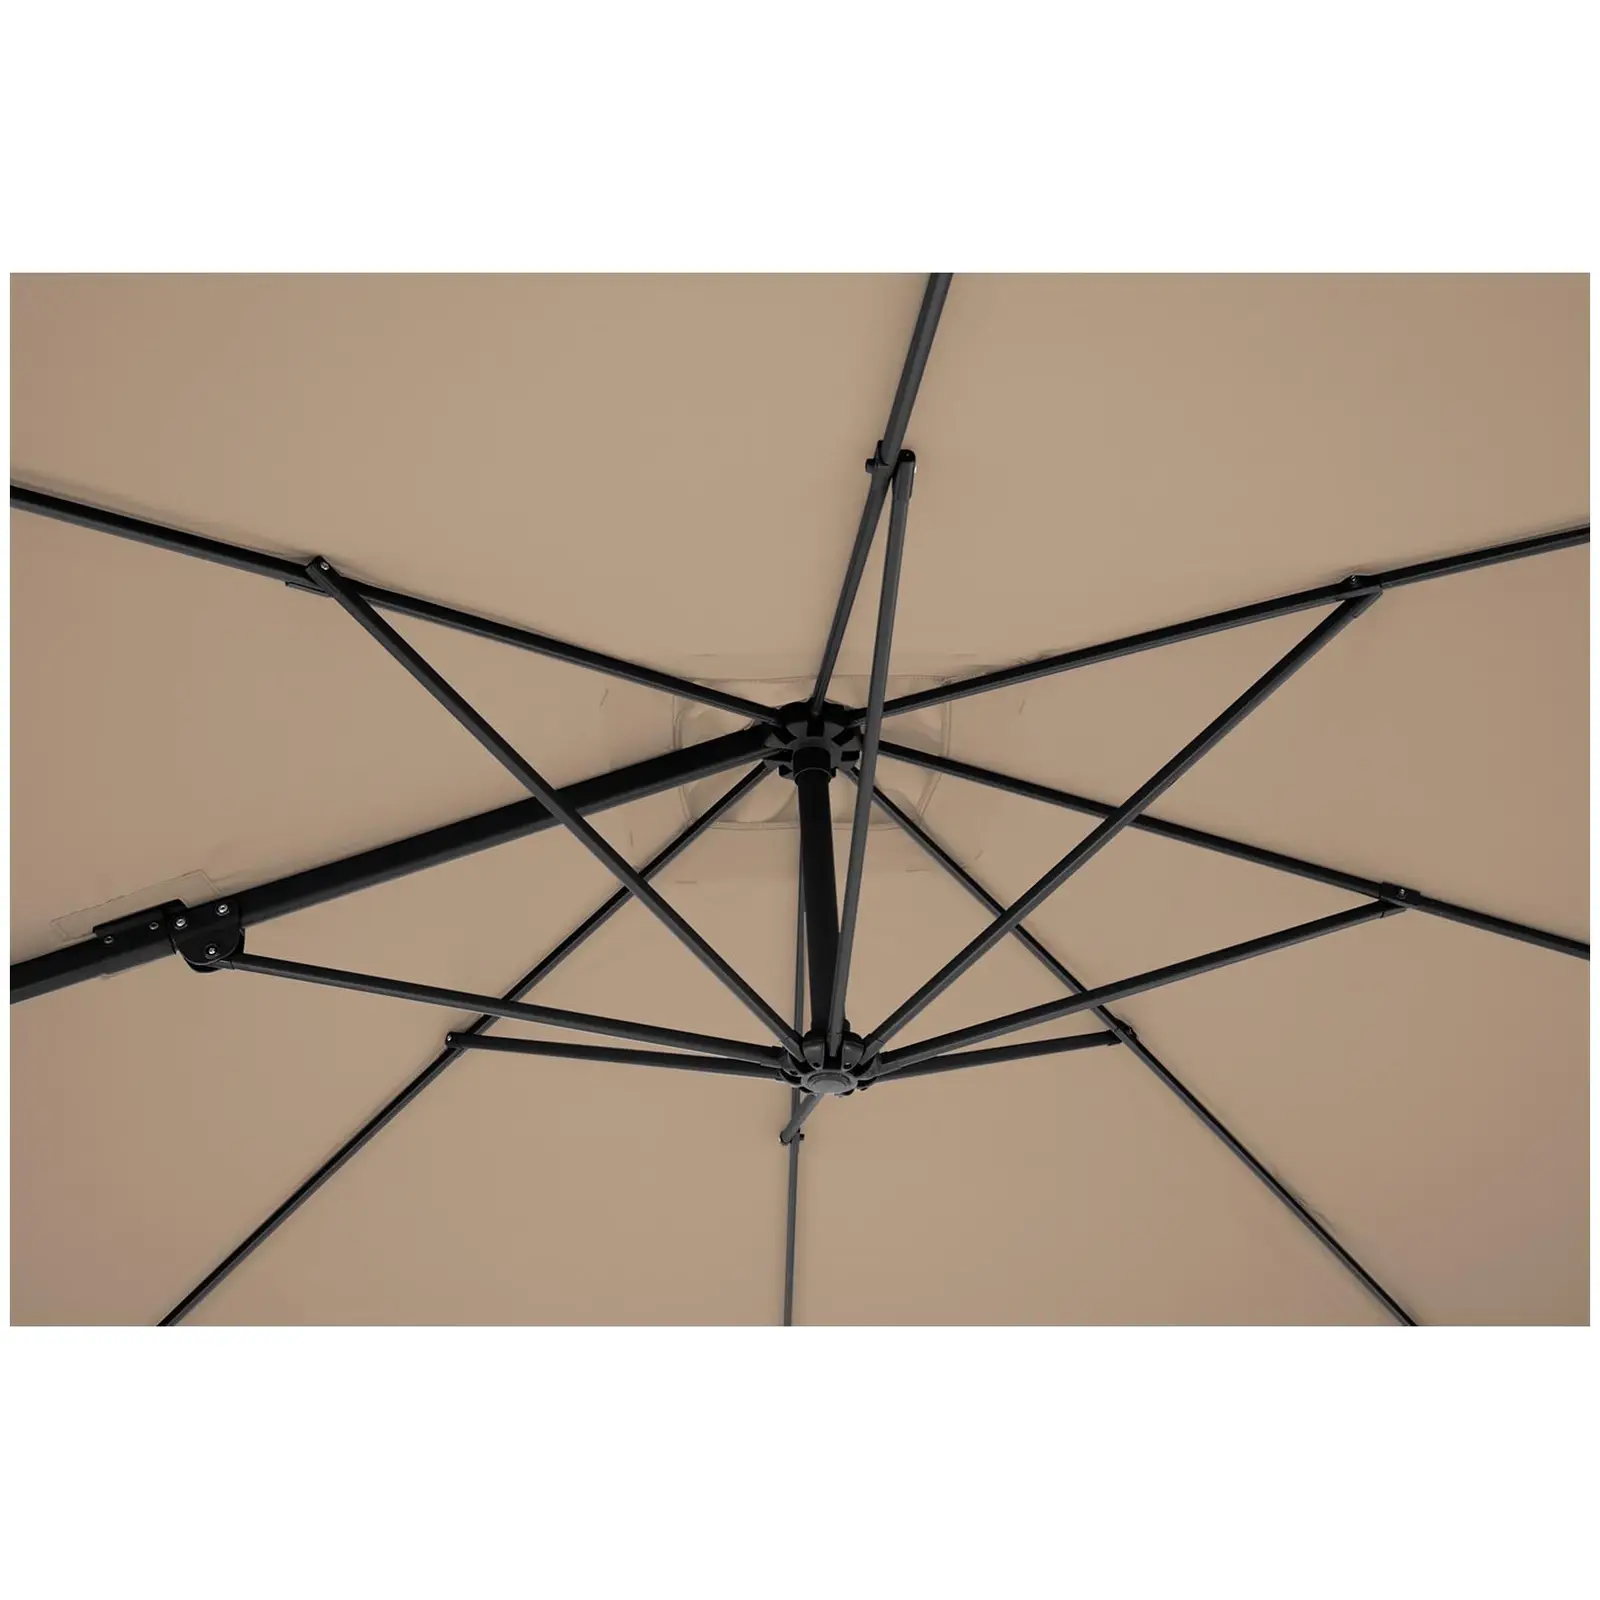 B-zboží Boční slunečník - světlehnědý - čtvercový - 250 x 250 cm - otočný